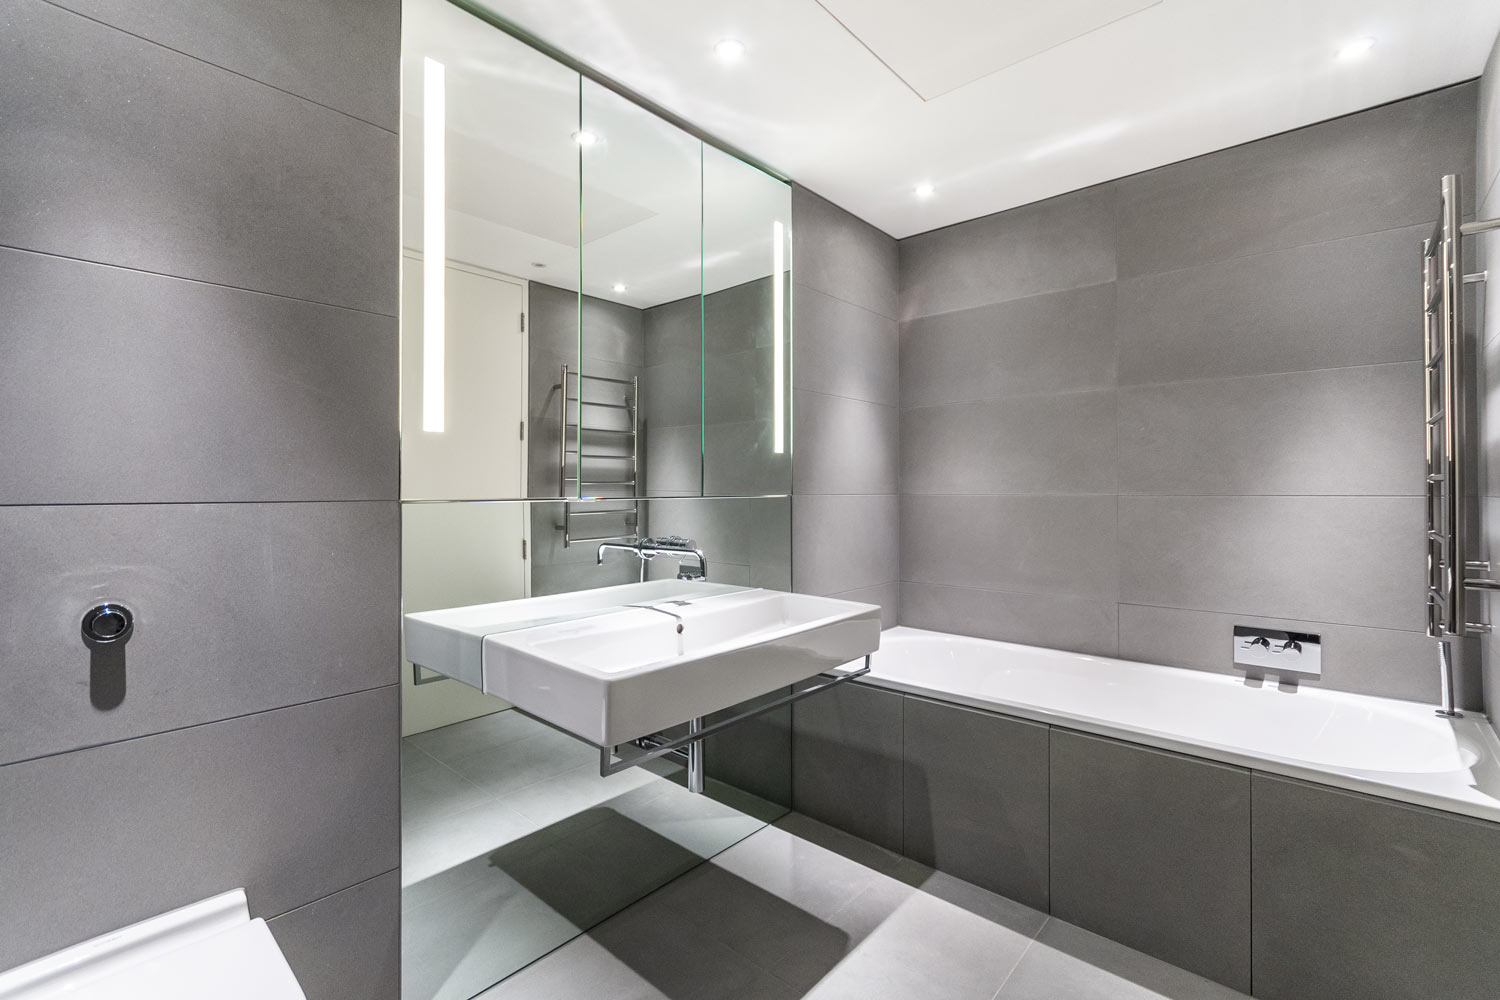 Bathroom Tile Ideas For Small Bathrooms, Small Bathroom Big Tiles